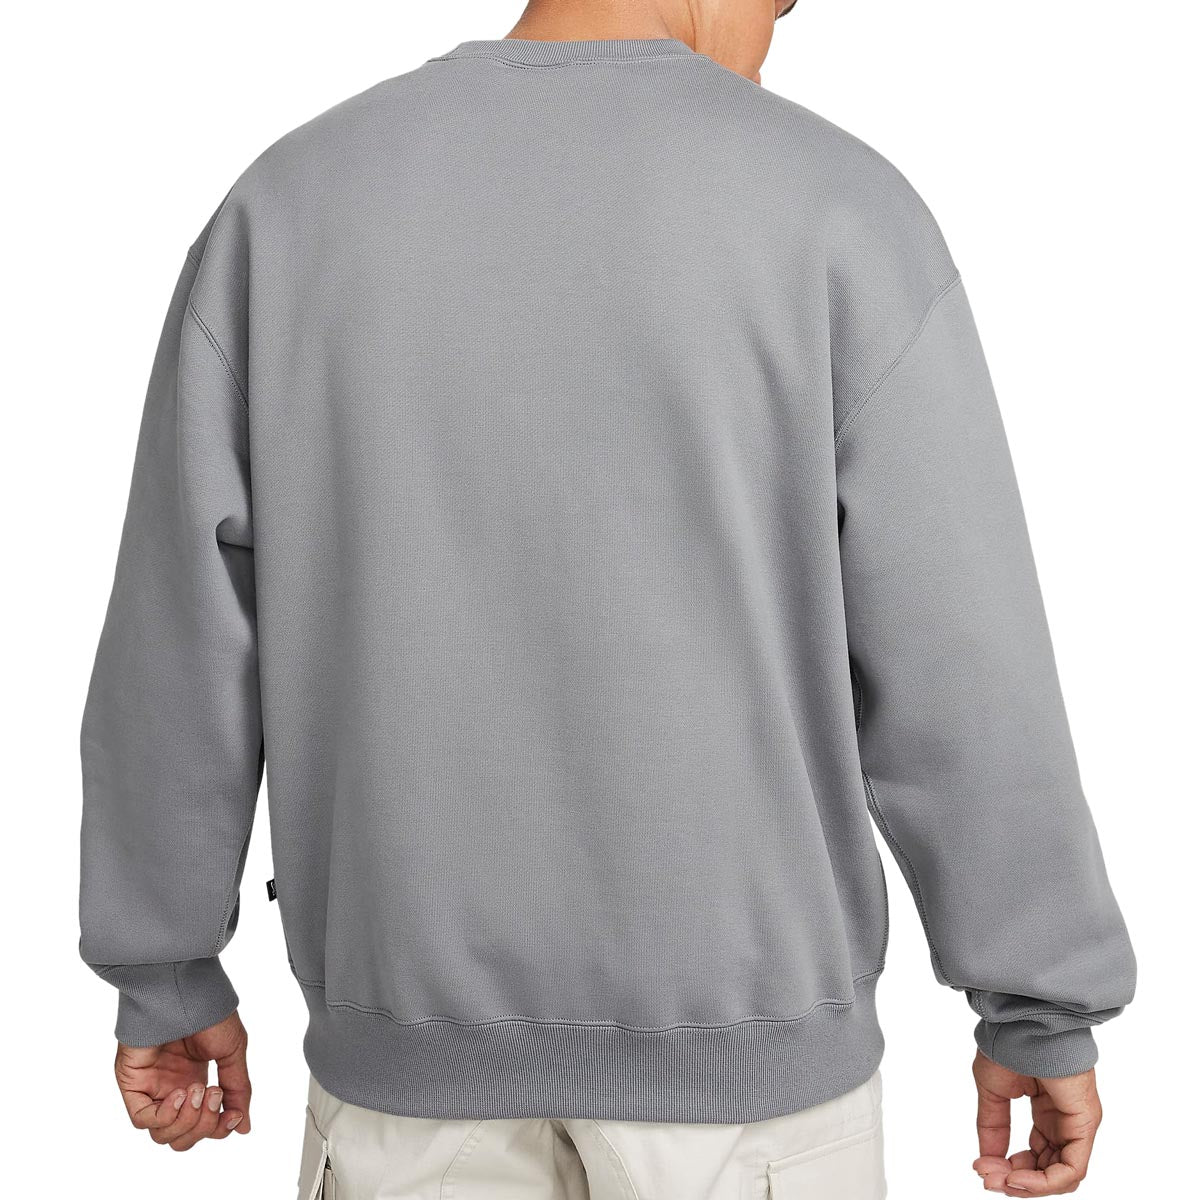 Nike SB Fleece Skate Crew Sweatshirt - Smoke Grey image 2